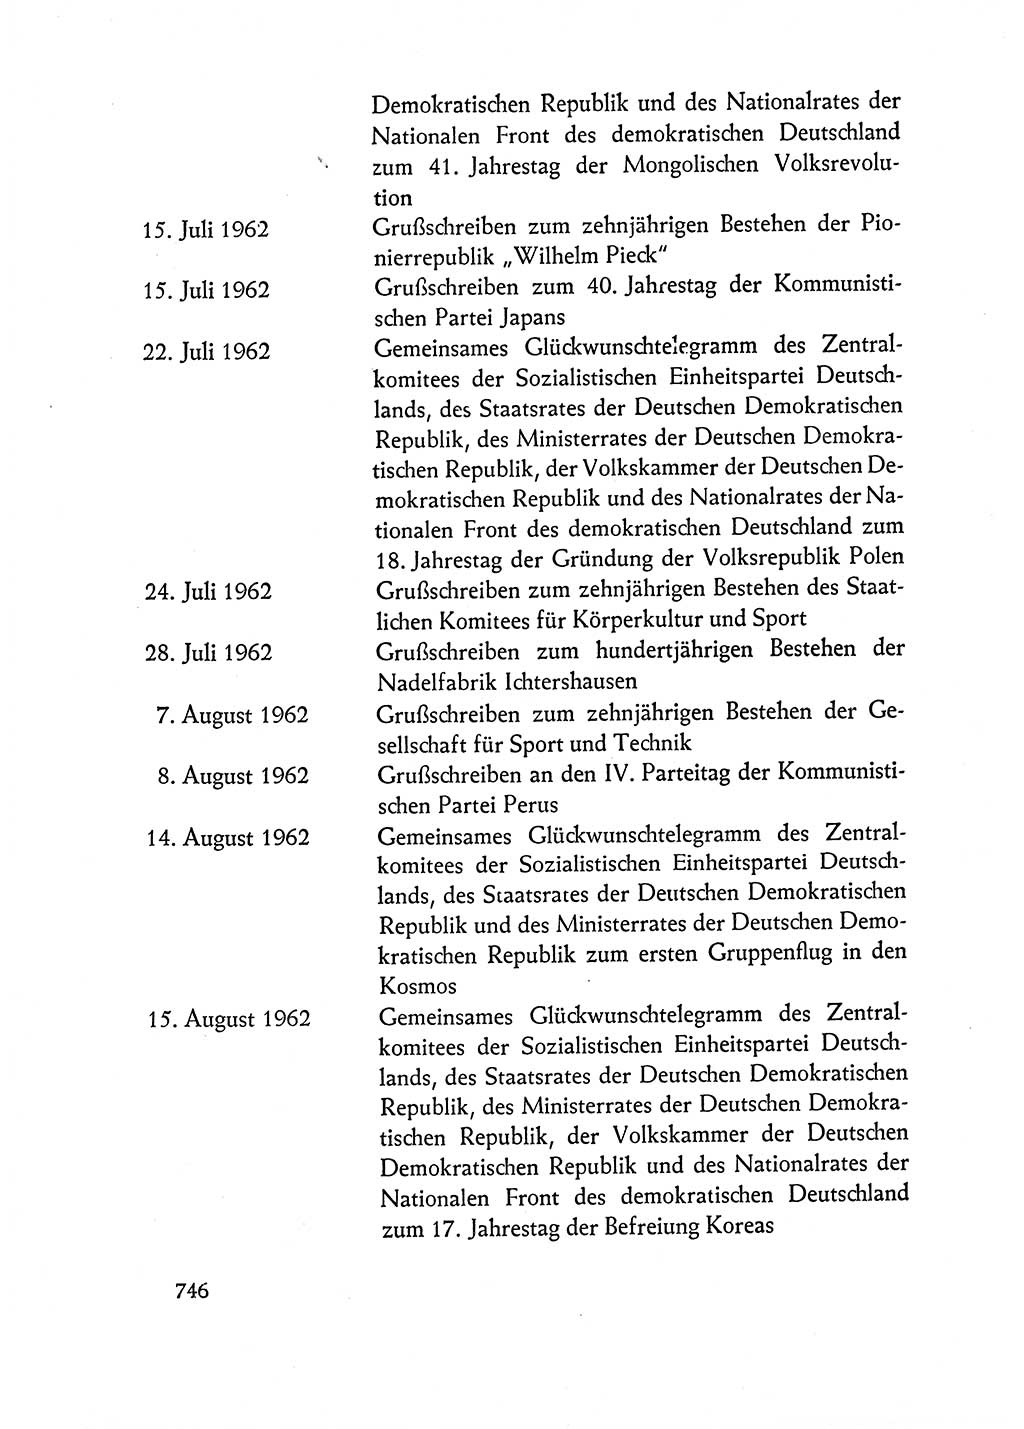 Dokumente der Sozialistischen Einheitspartei Deutschlands (SED) [Deutsche Demokratische Republik (DDR)] 1962-1963, Seite 746 (Dok. SED DDR 1962-1963, S. 746)